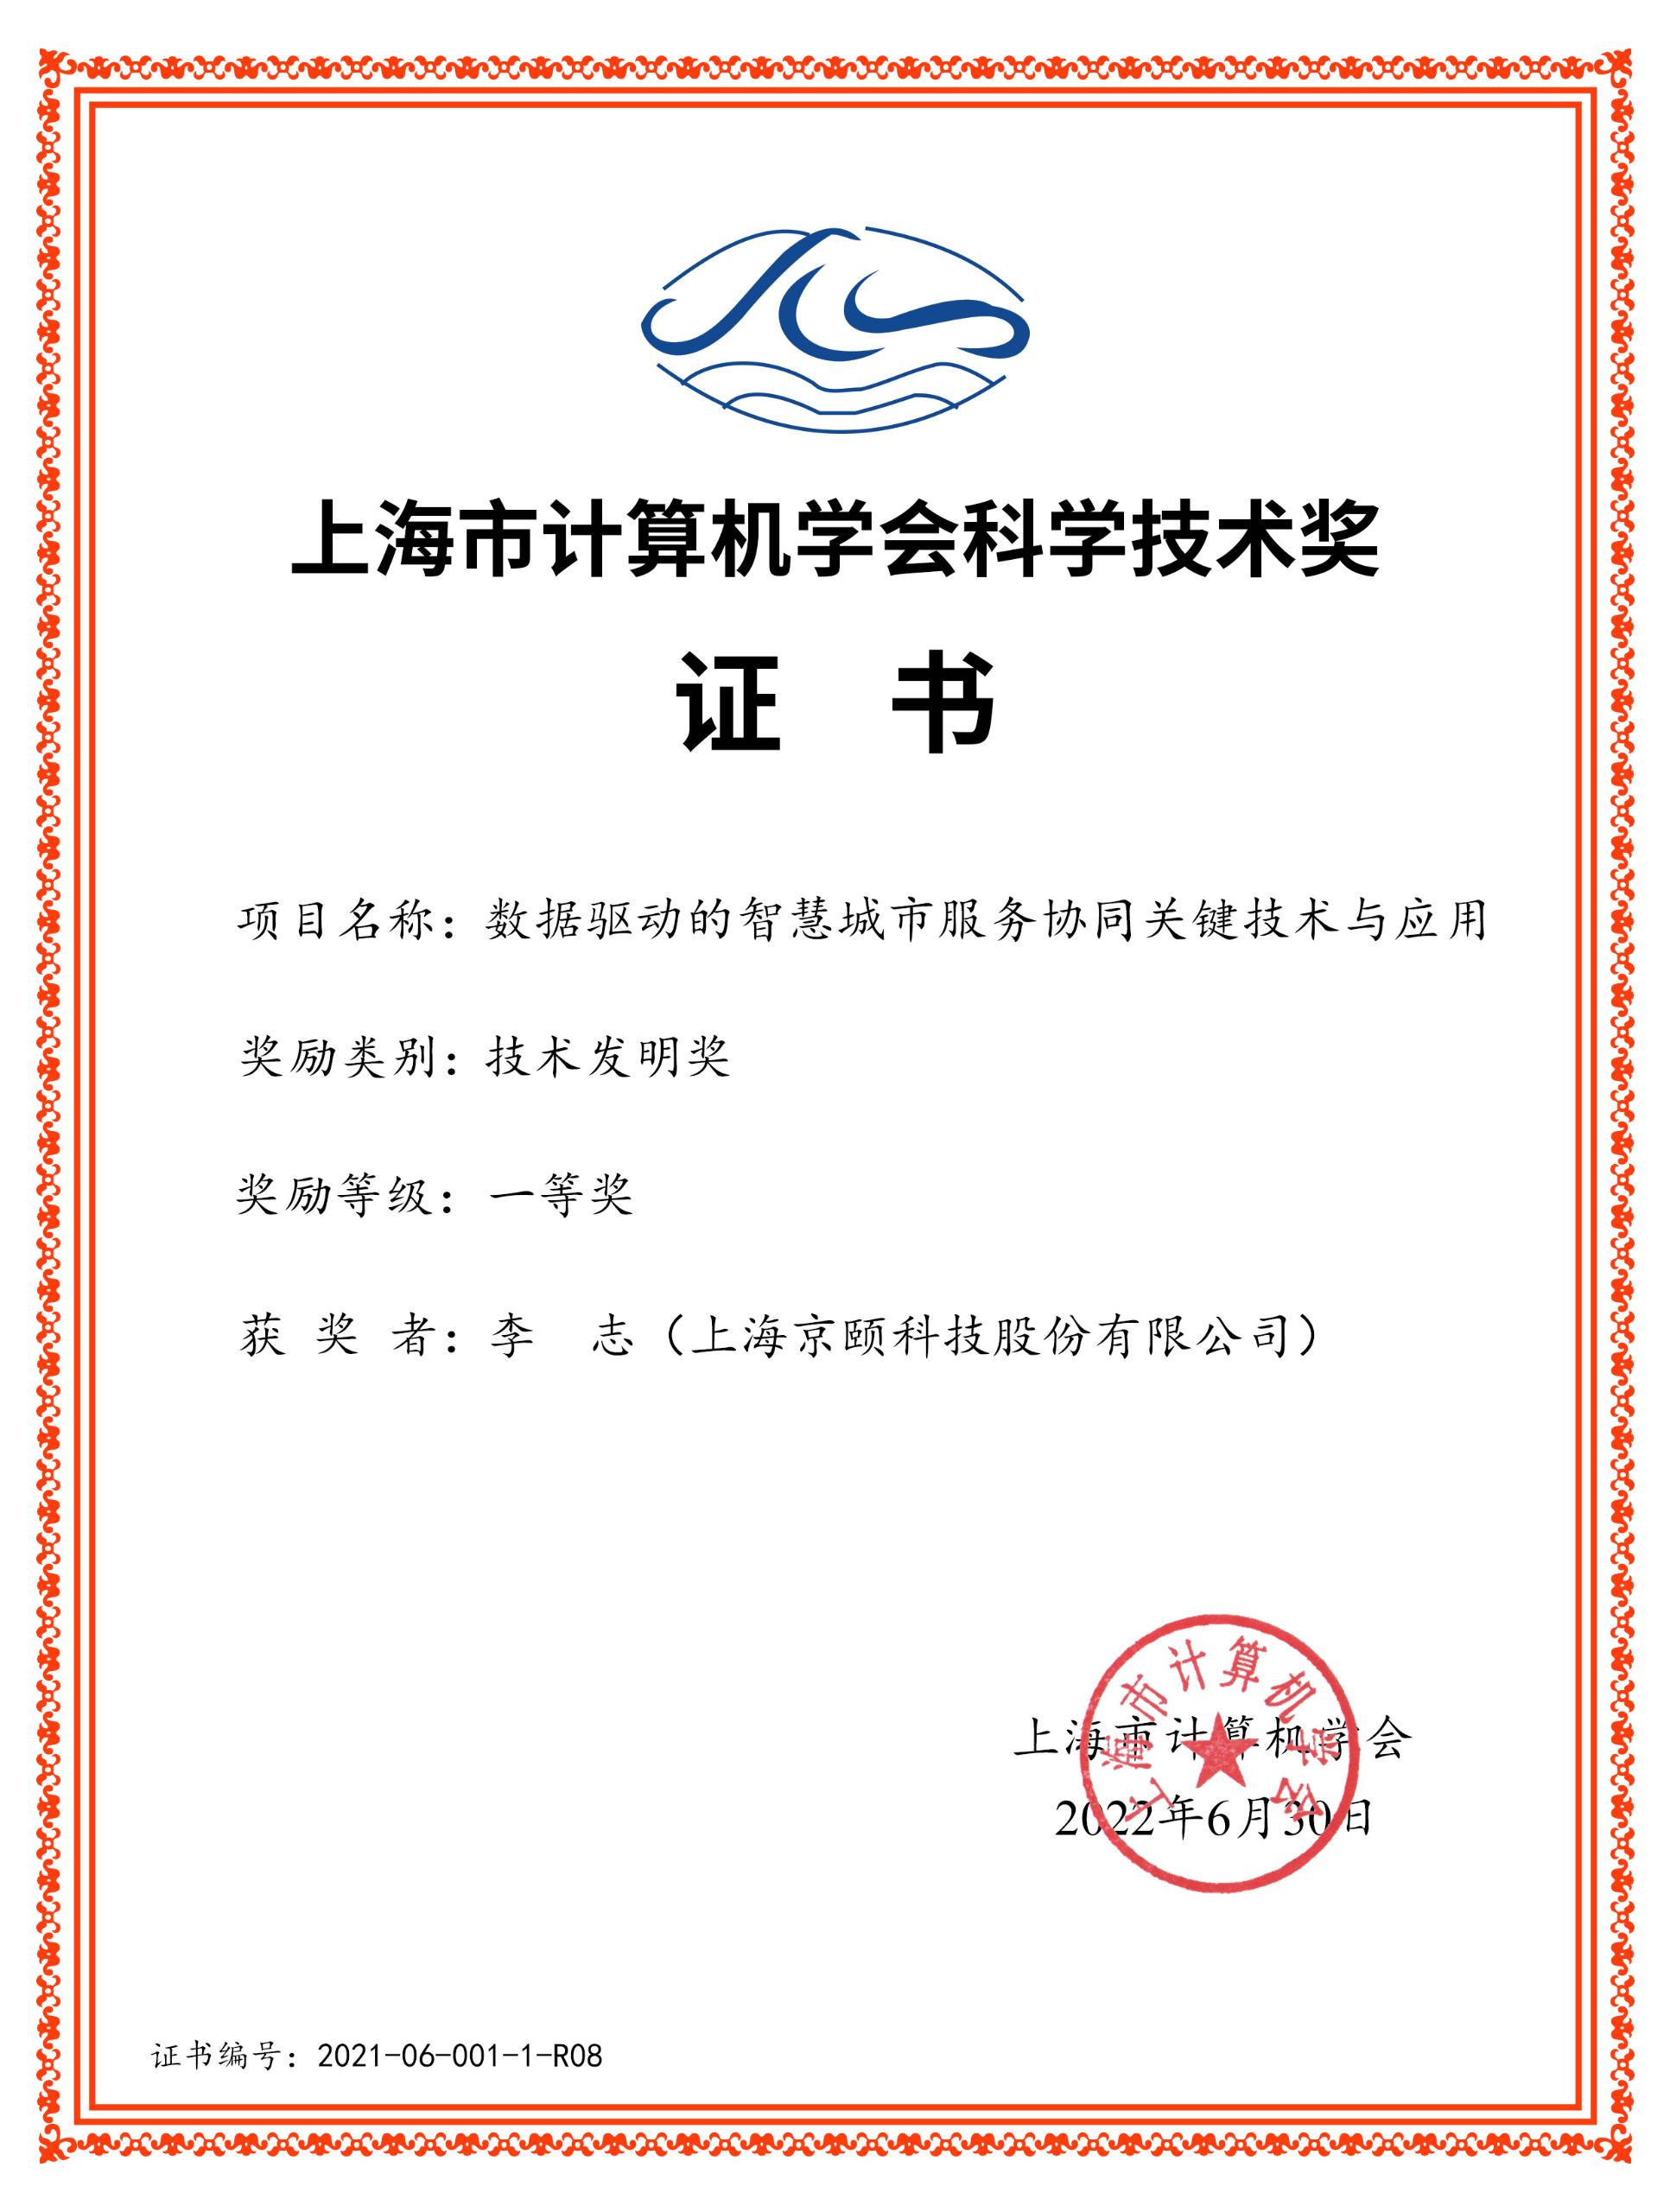 上海市计算机学会科学技术奖